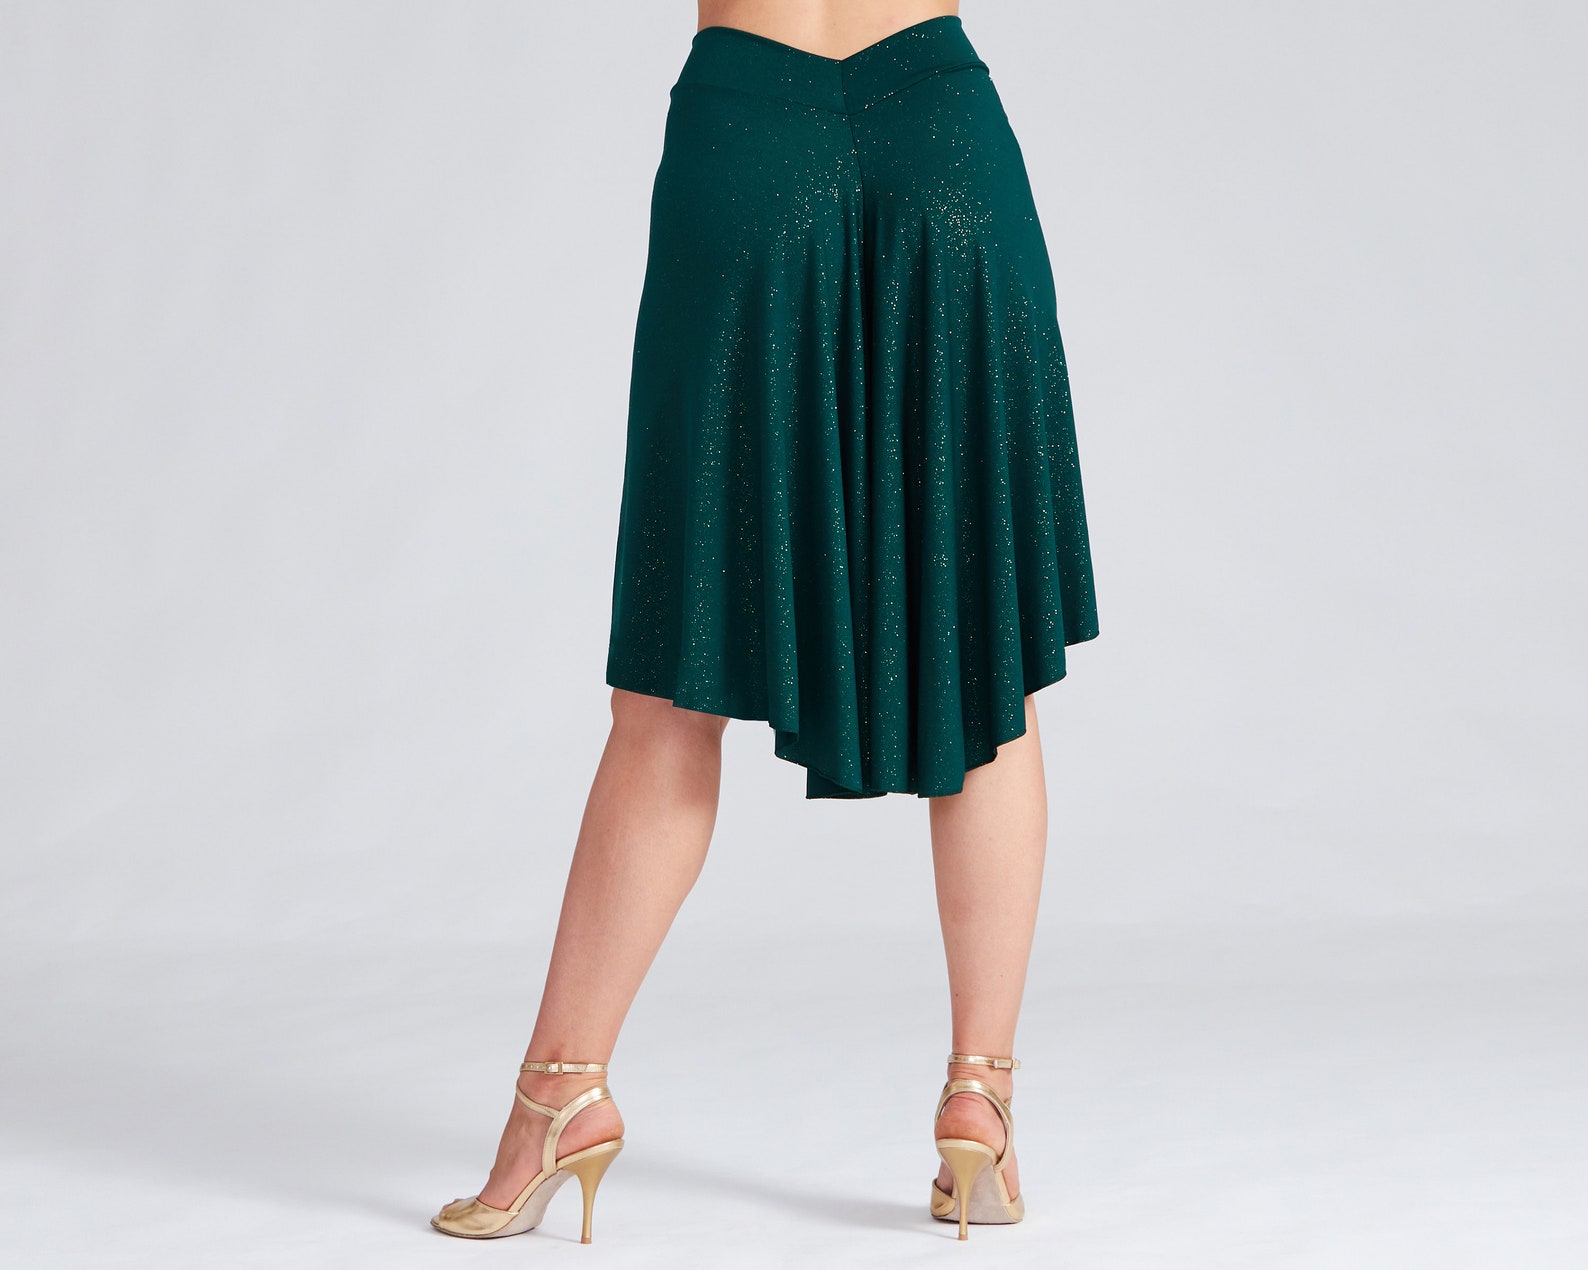 Sparkling Green Tango Skirt with Slit Dance Skirt Ballroom | Etsy